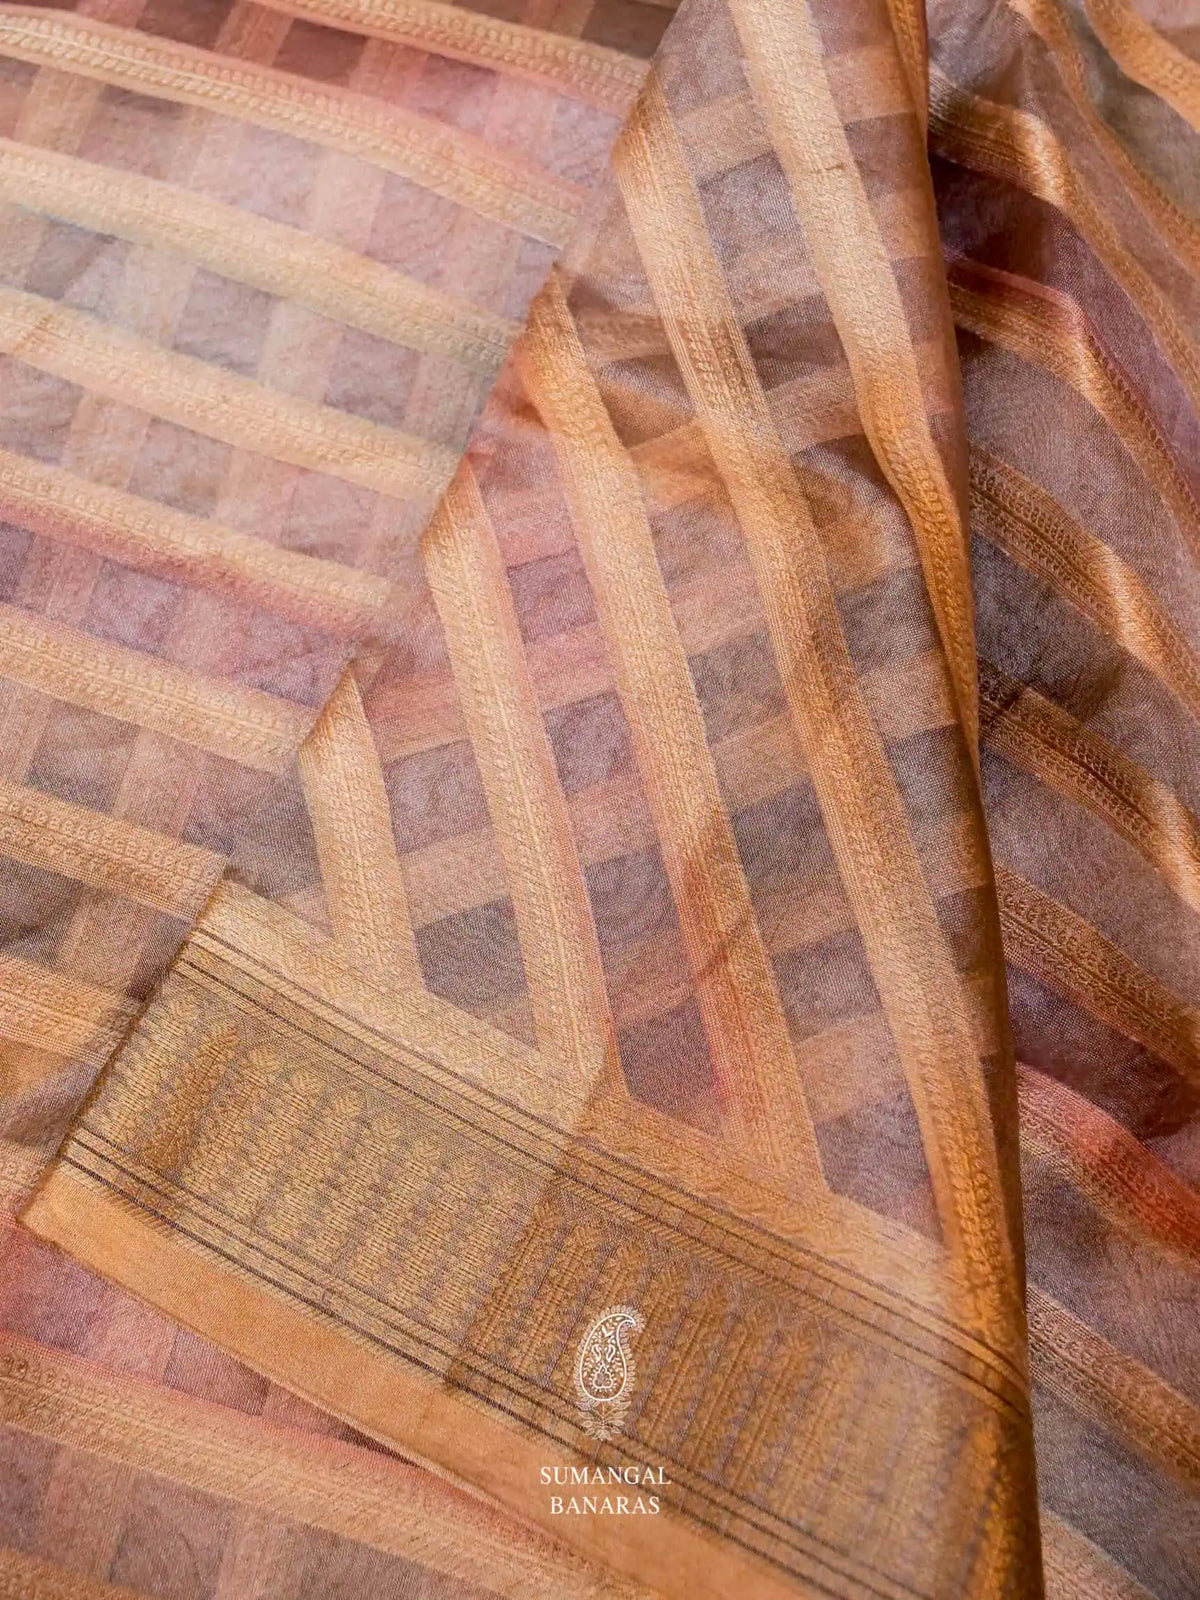 Handwoven Rangkat Banarasi Tissue Silk Saree